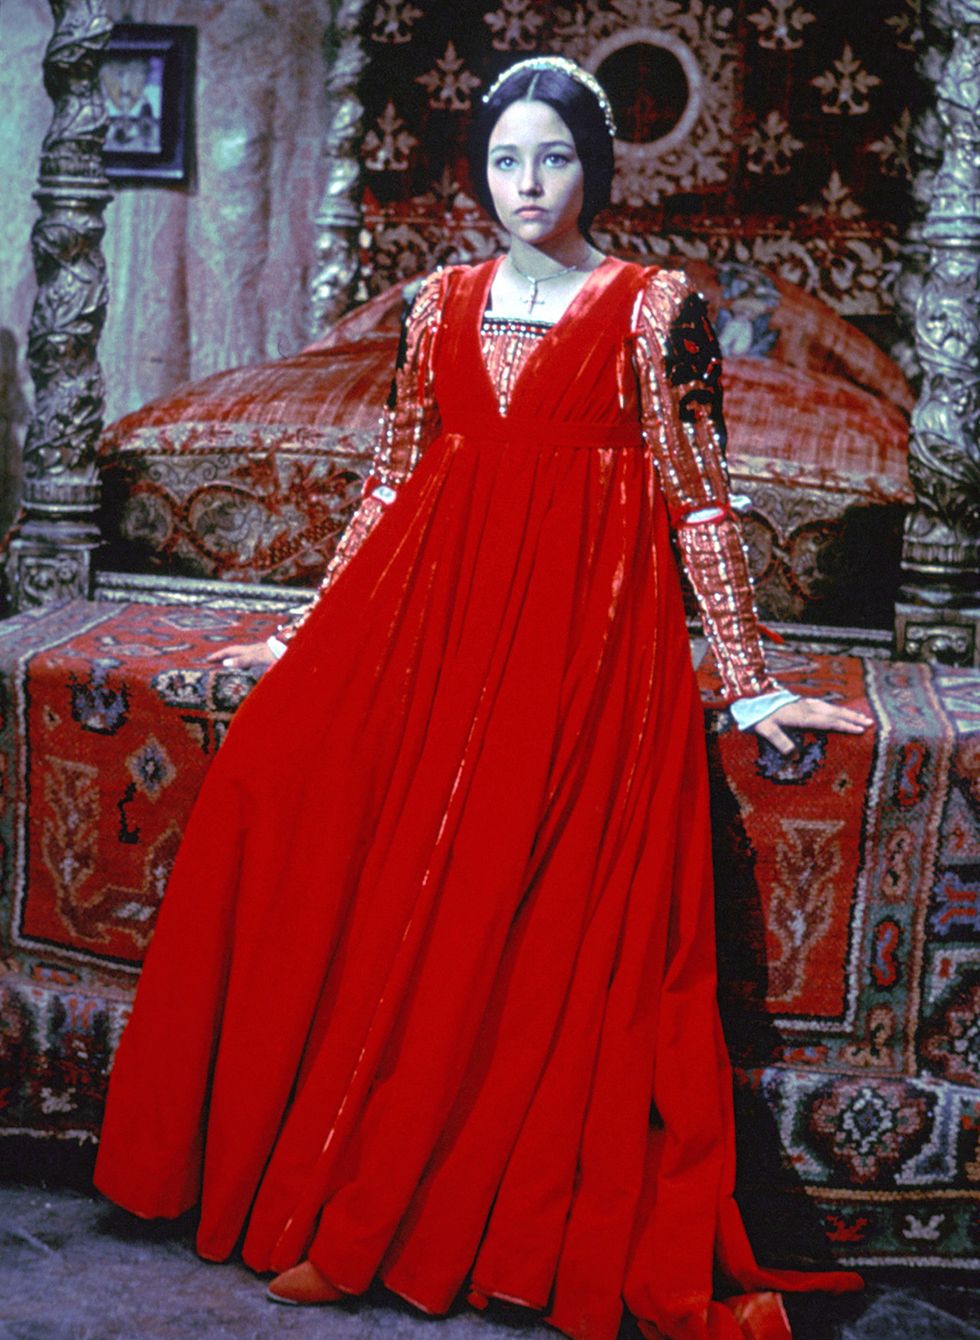 <p>Un clásico olvidado de Franco Zeffirelli, que en 1968 dio a conocer a Oliva Hussey con vestidos tan maravillosos como este de terciopelo rojo. El exquisito diseño de vestuario hizo al filme merecedor de un Oscar de la Academia.</p>